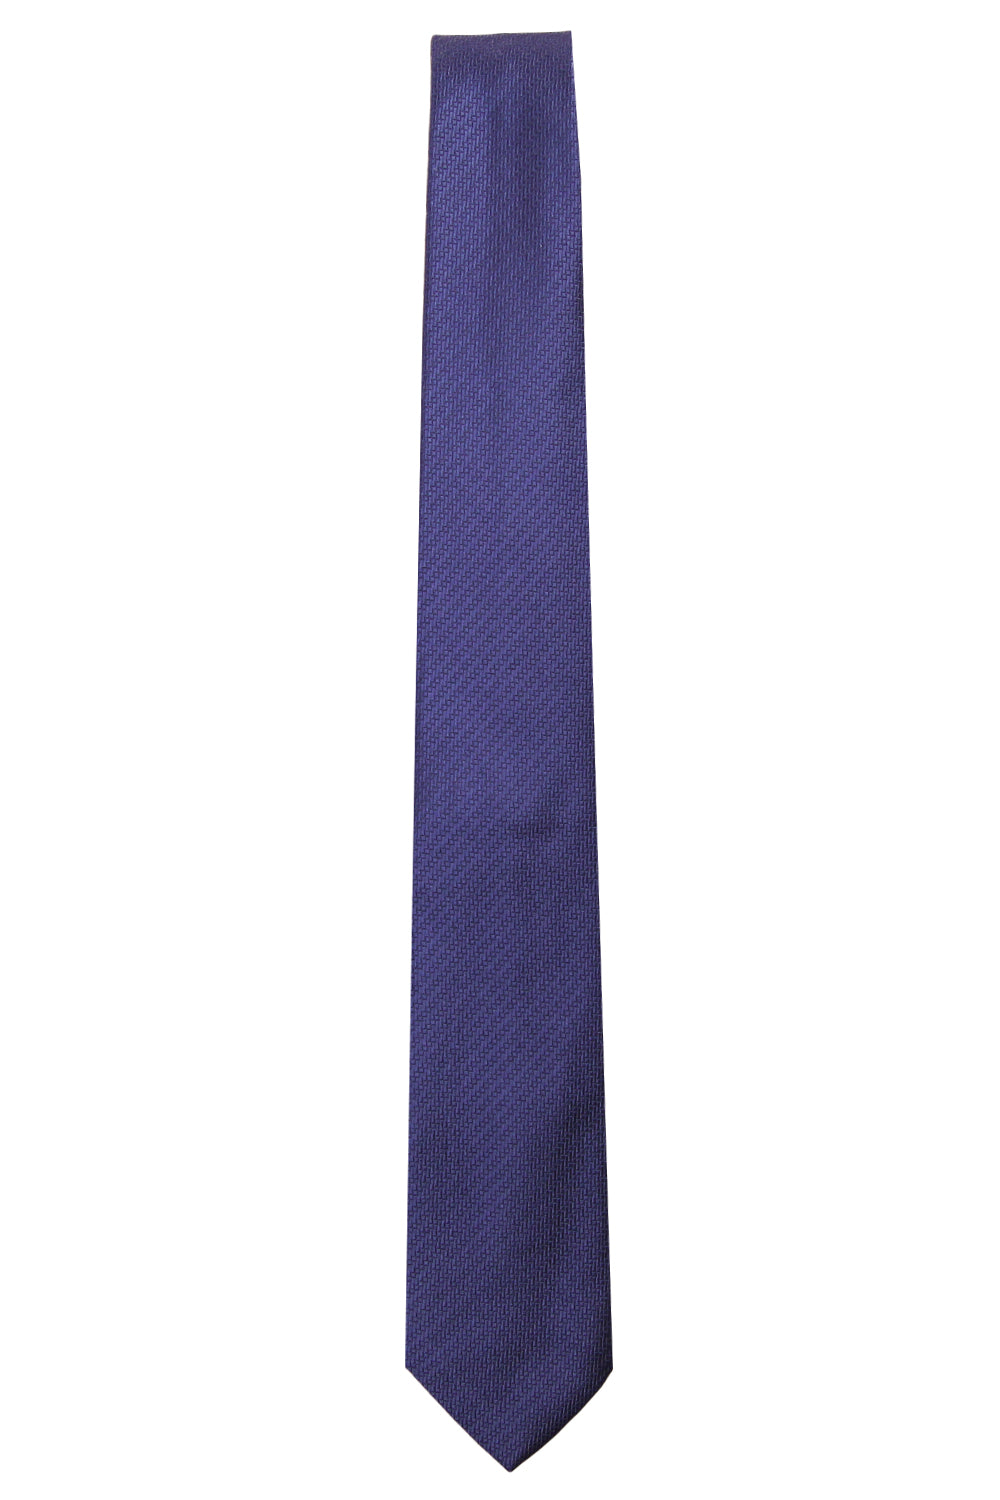 Image of CHURCH'S Cravatta in seta